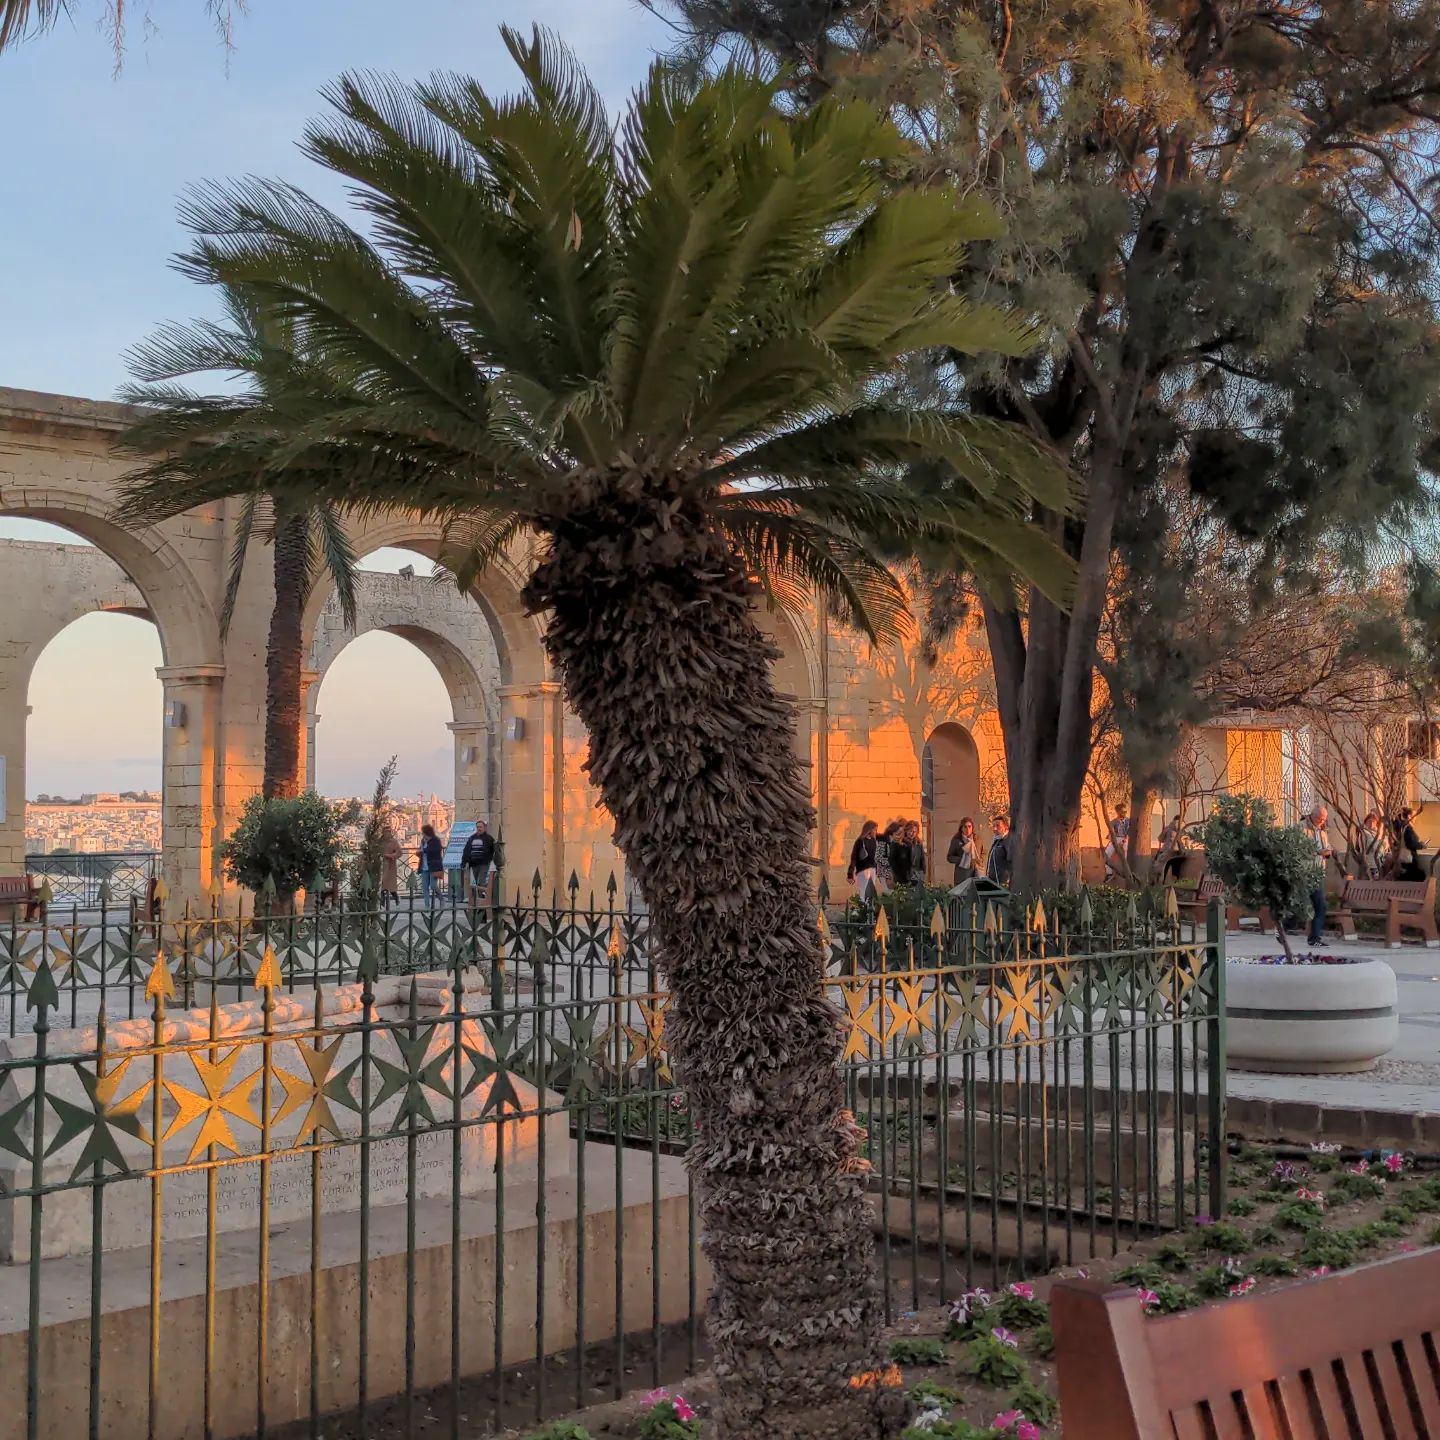 Und hier mal wieder eine der beliebten Palmen. #Malta #Valletta #Reisen #Travel #Unterwegs #Palme